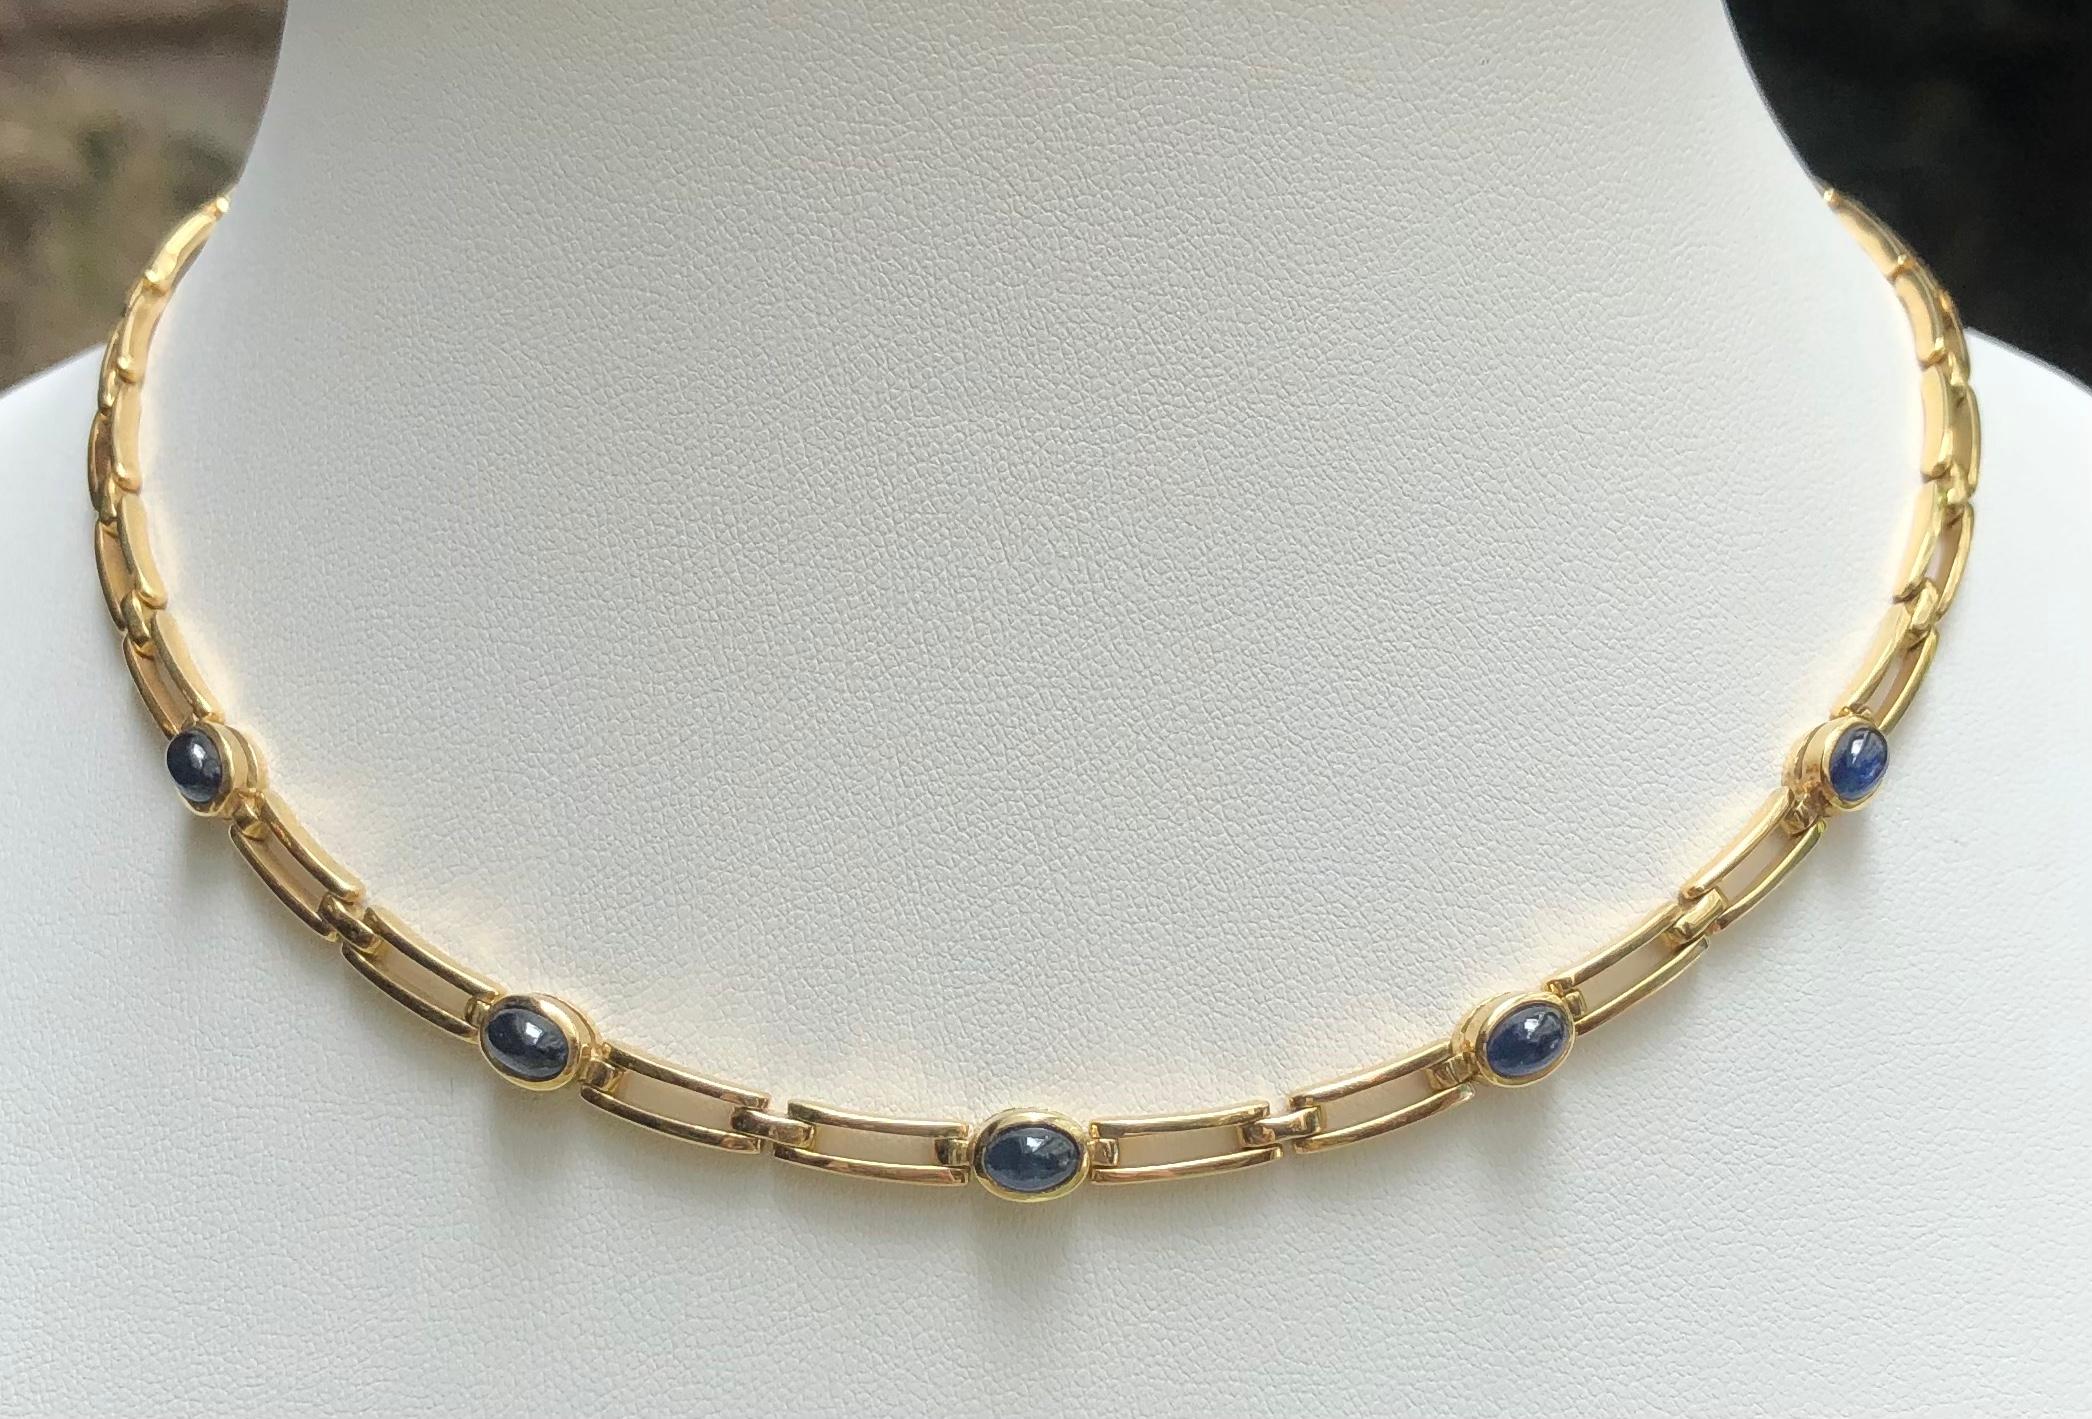 Cabochon Blauer Saphir 4,42 Karat Halskette in 18 Karat Goldfassung

Breite:  0.5 cm 
Länge: 40,0 cm
Gesamtgewicht: 36,55 Gramm

